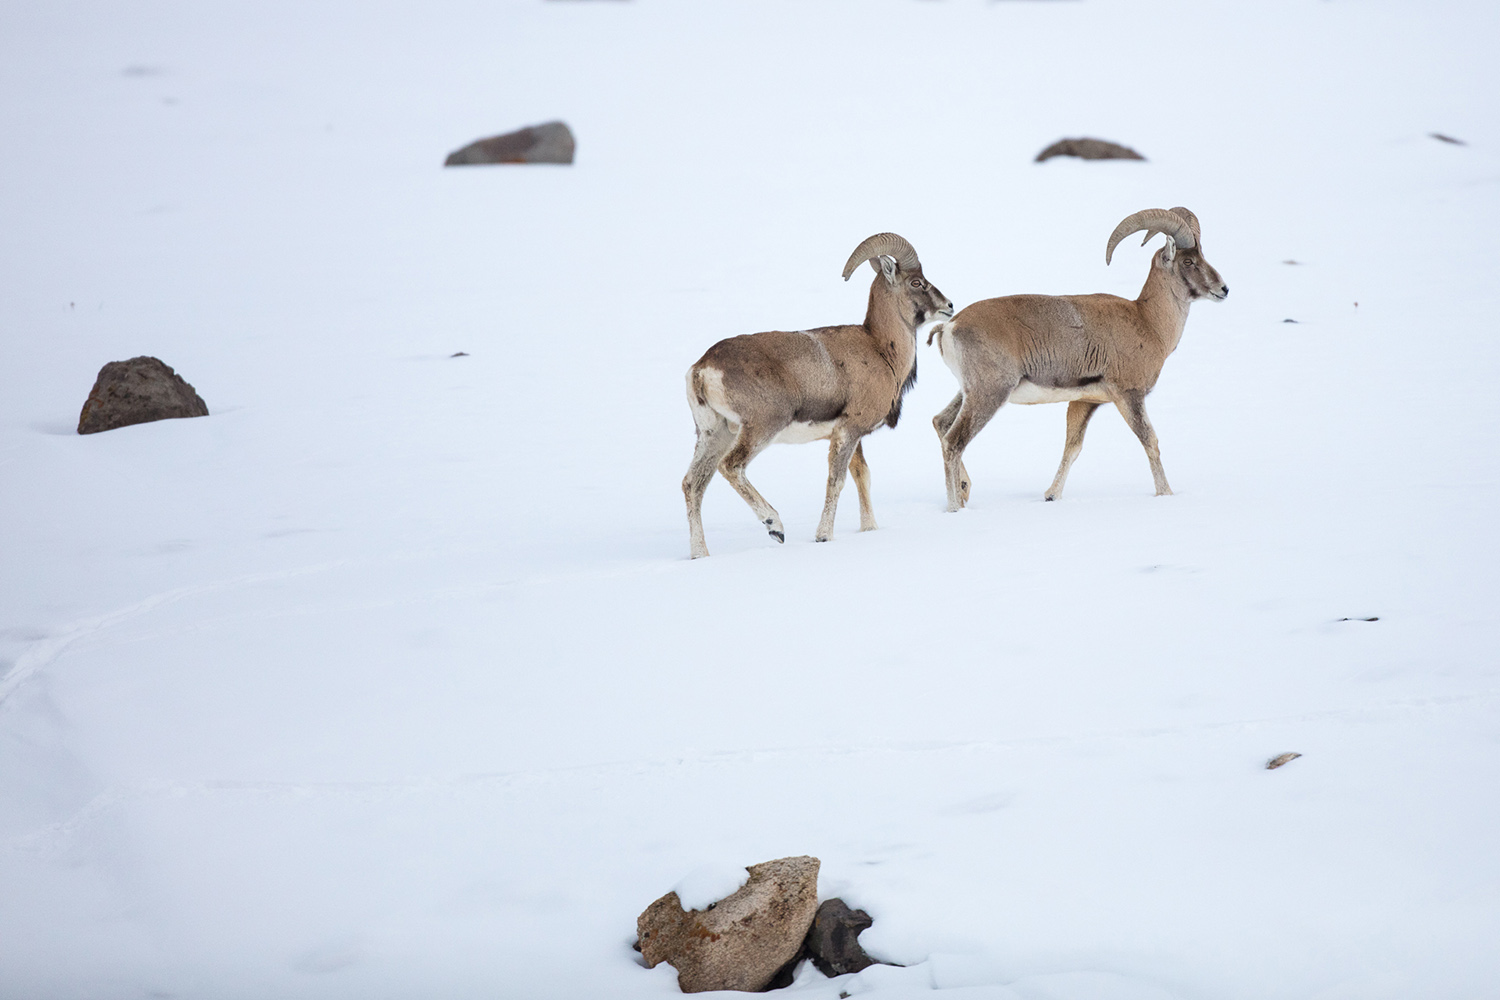 Urials mâles, Ovis vignej, un mouflon endémique du Ladakh, lors d'un voyage photo